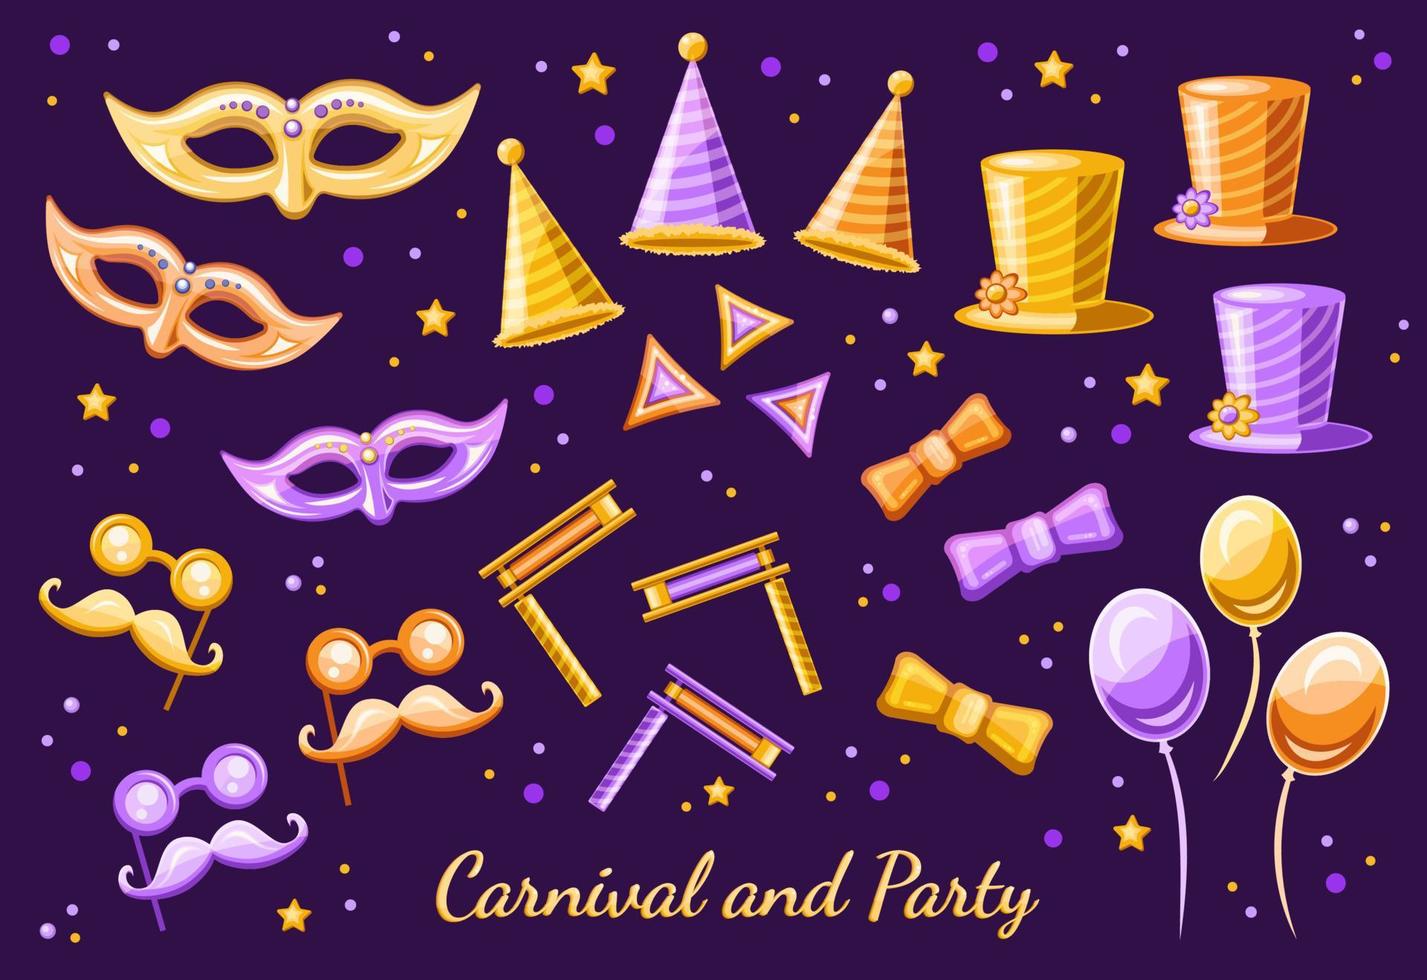 grupo de objetos de festa e carnaval, elementos para mardi gras, feriado de purim e evento de festival e baile de máscaras em três variantes de cores. vetor